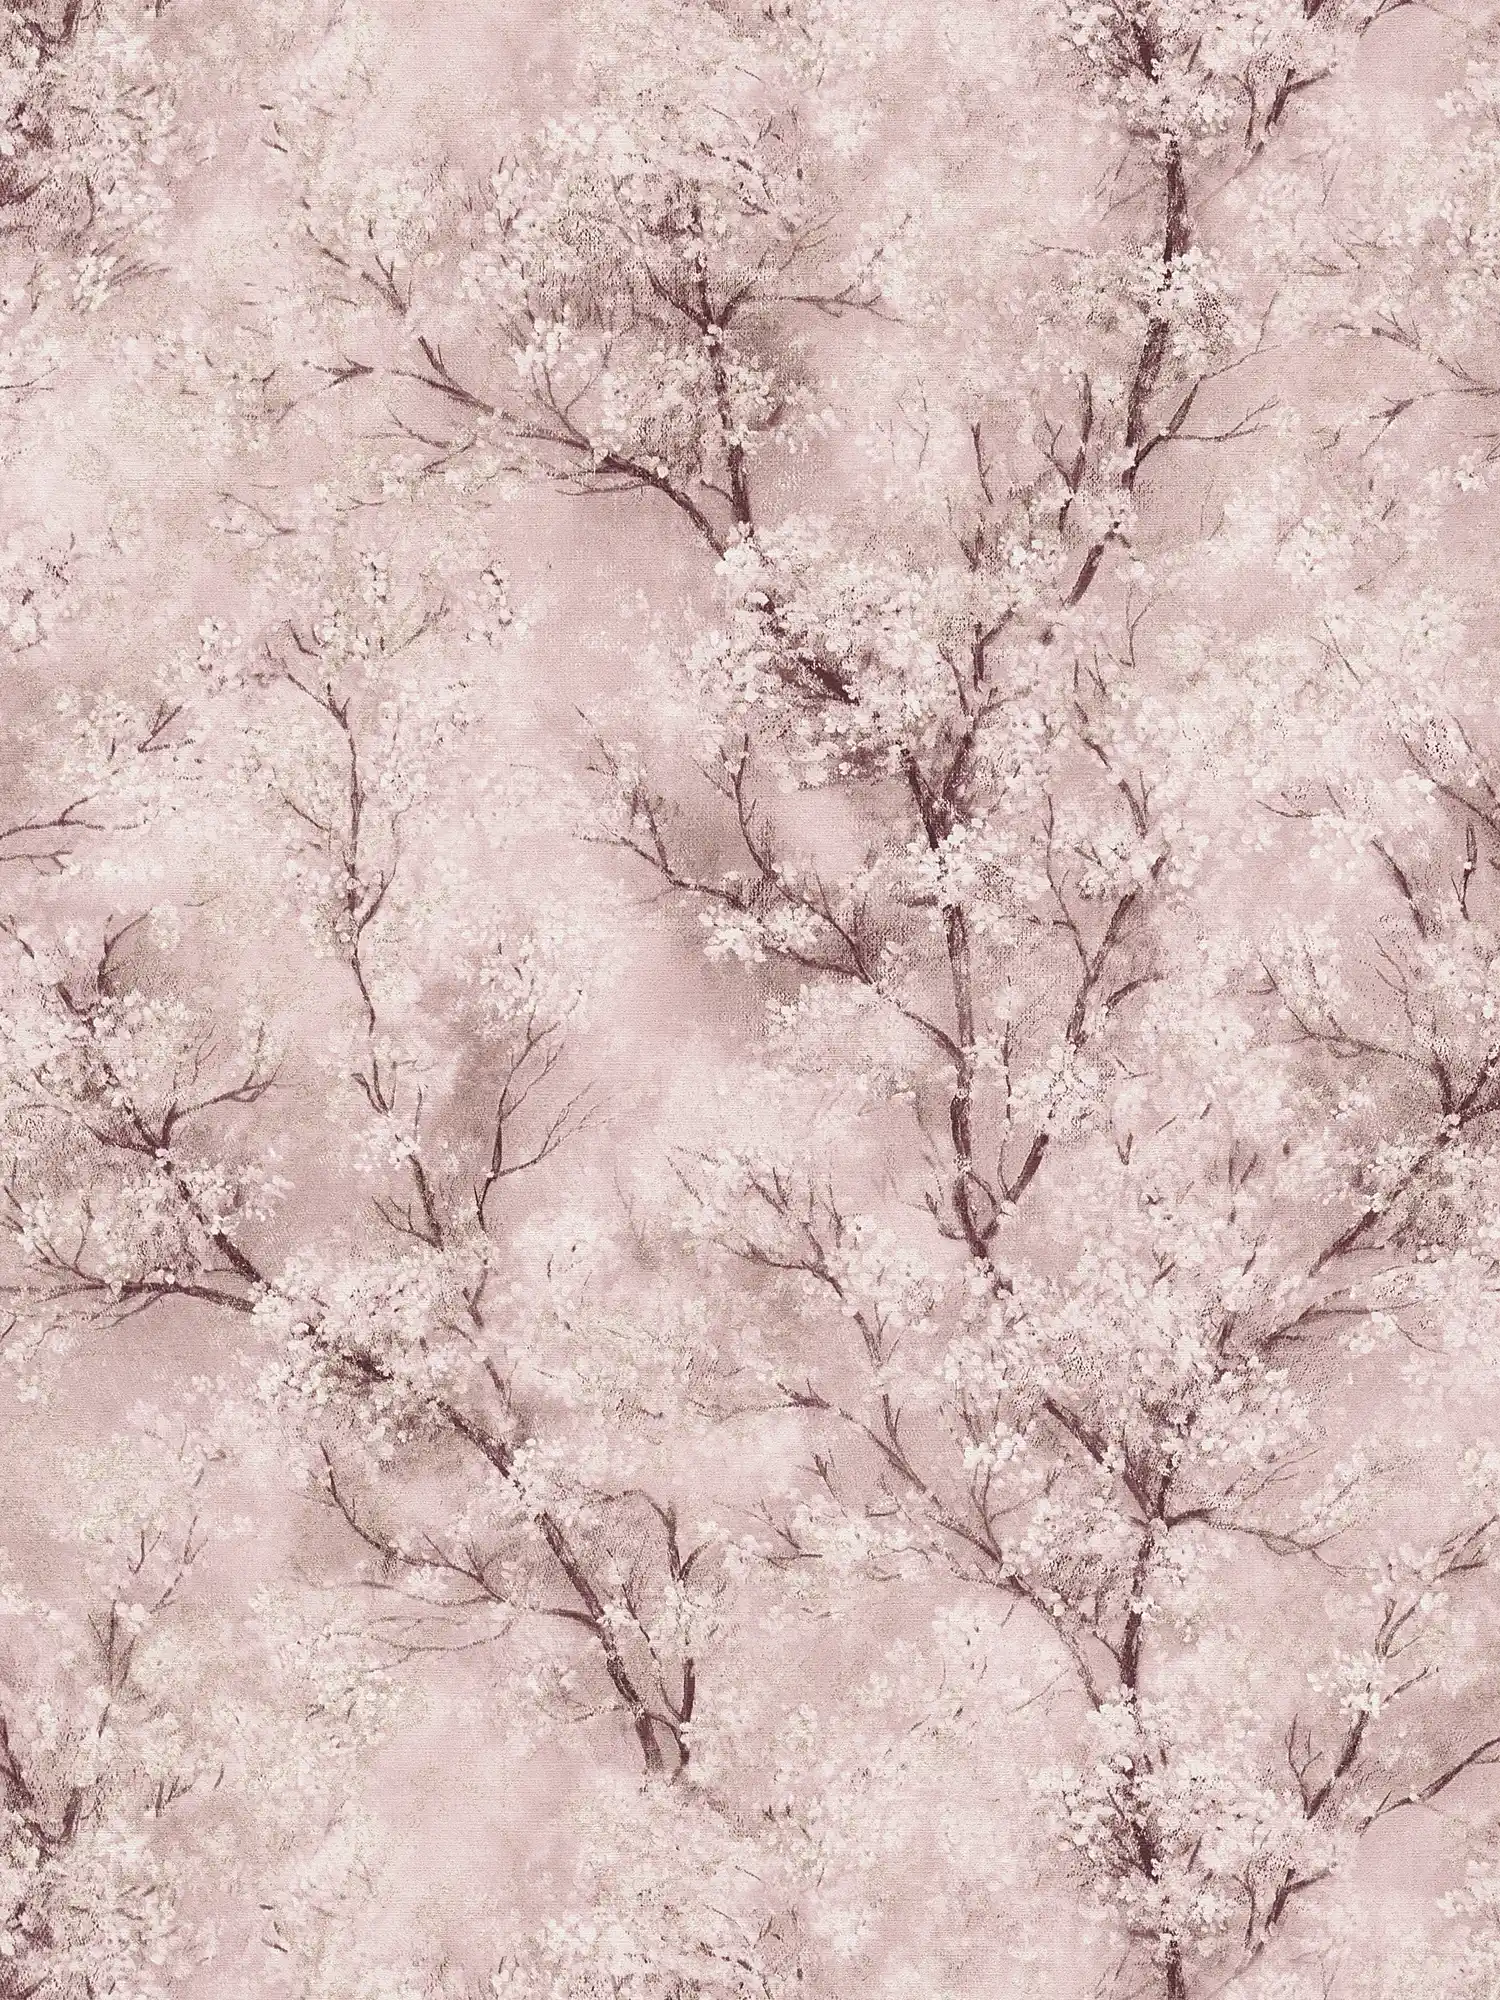         Tapete Kirschblüten Glitzer-Effekt – Rosa, Braun, Weiß
    